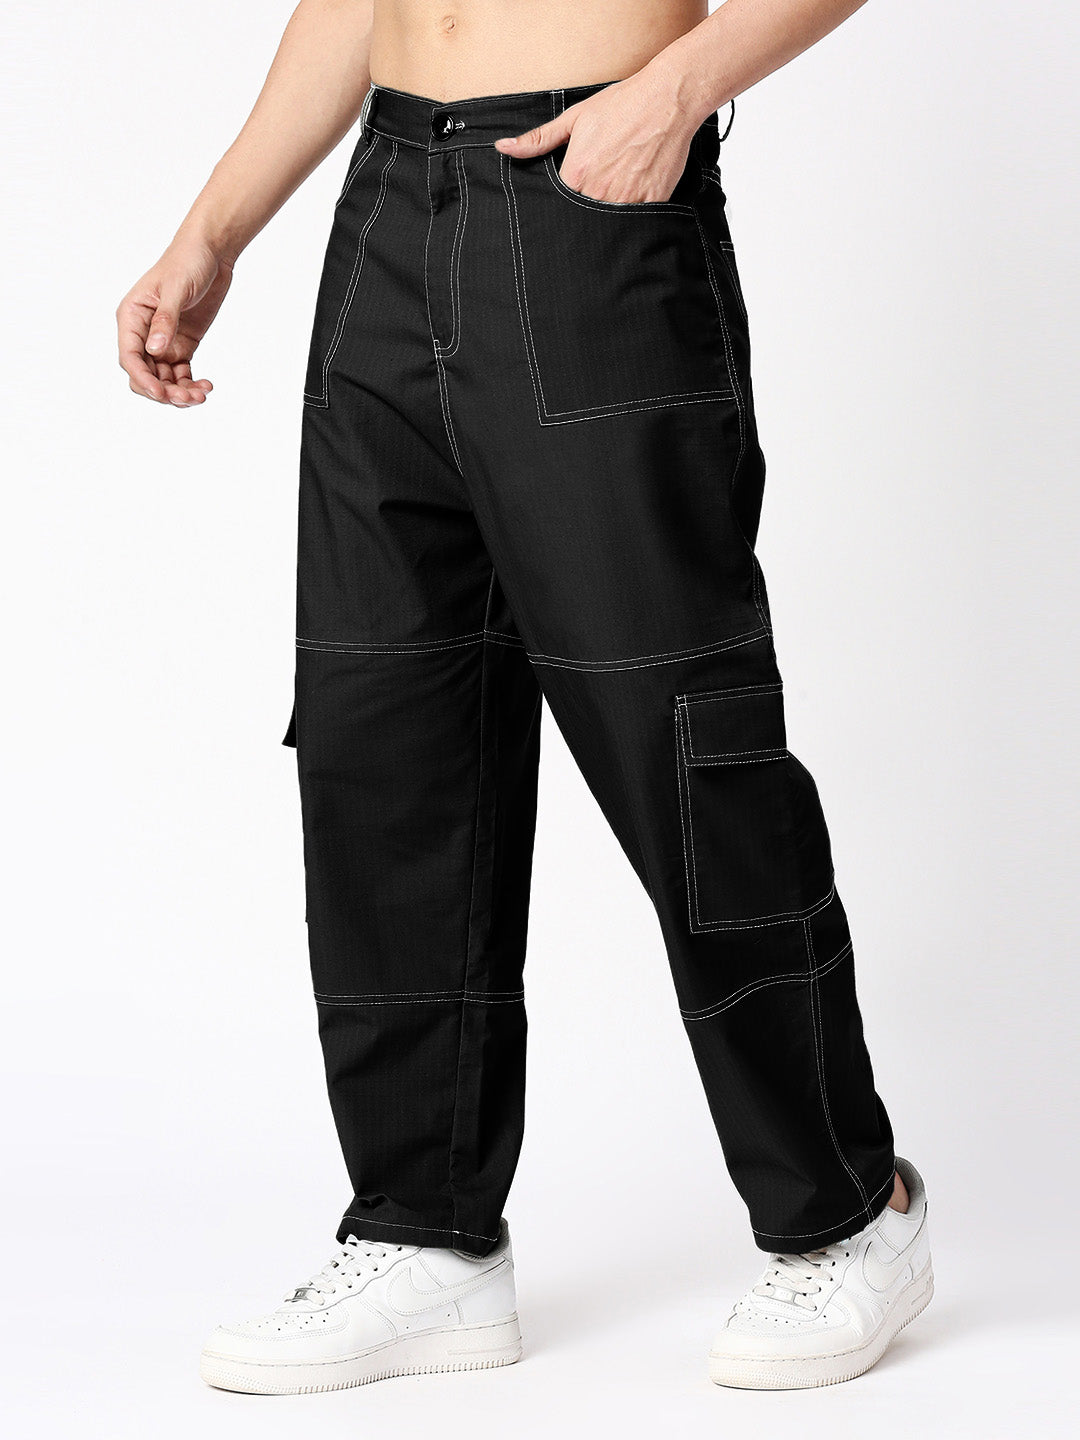 Men's Black Cotton Blend Handwoven Trousers